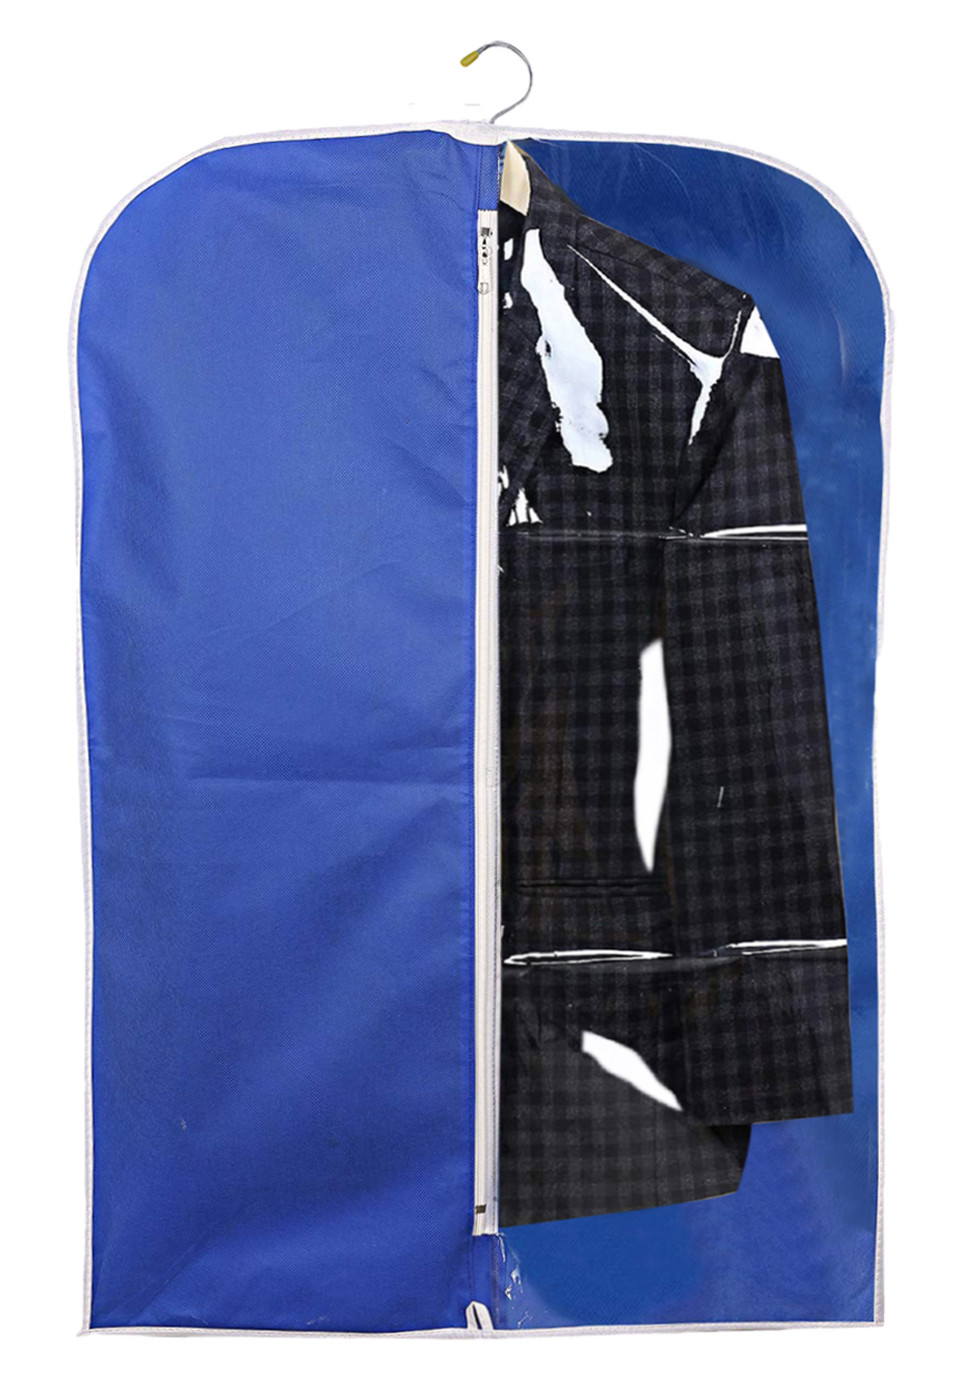 Kuber Industries Half Transparent Non Woven Men's Coat Blazer Suit Cover (Brown & Royal Blue)  -CTKTC41495